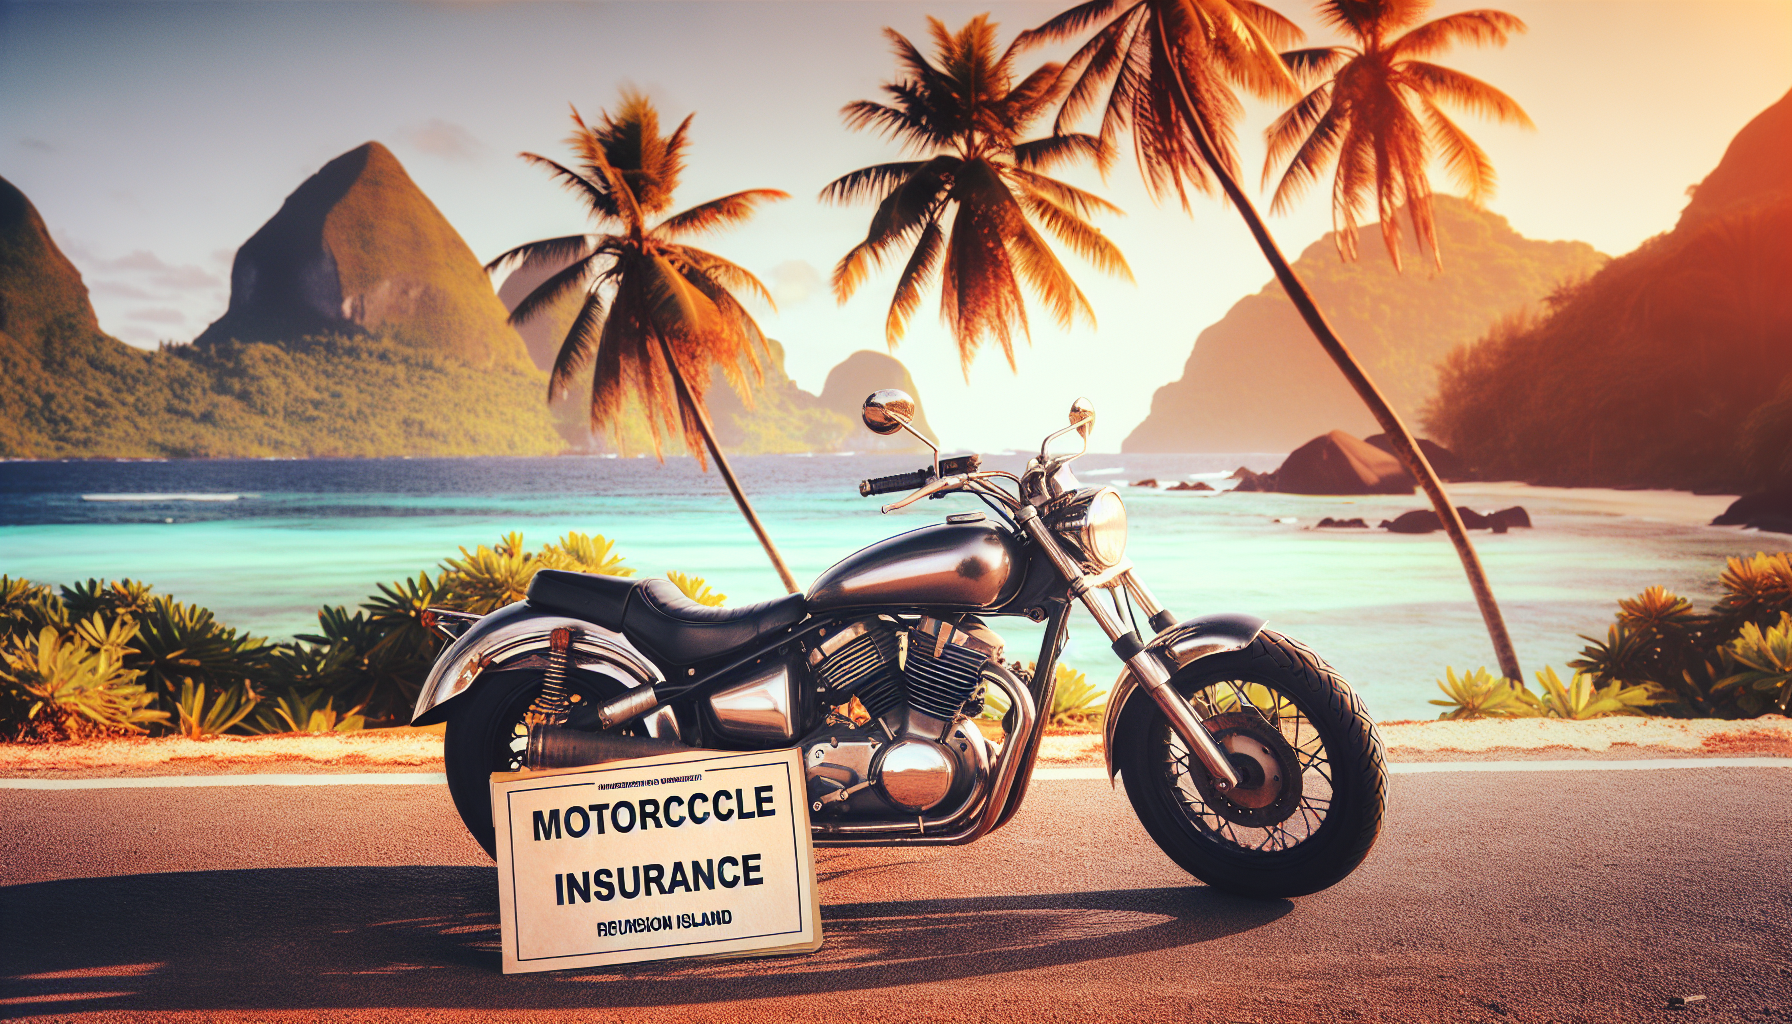 découvrez l'assurance moto à la réunion pour tous types de motos. protégez votre véhicule avec une couverture adaptée à vos besoins.